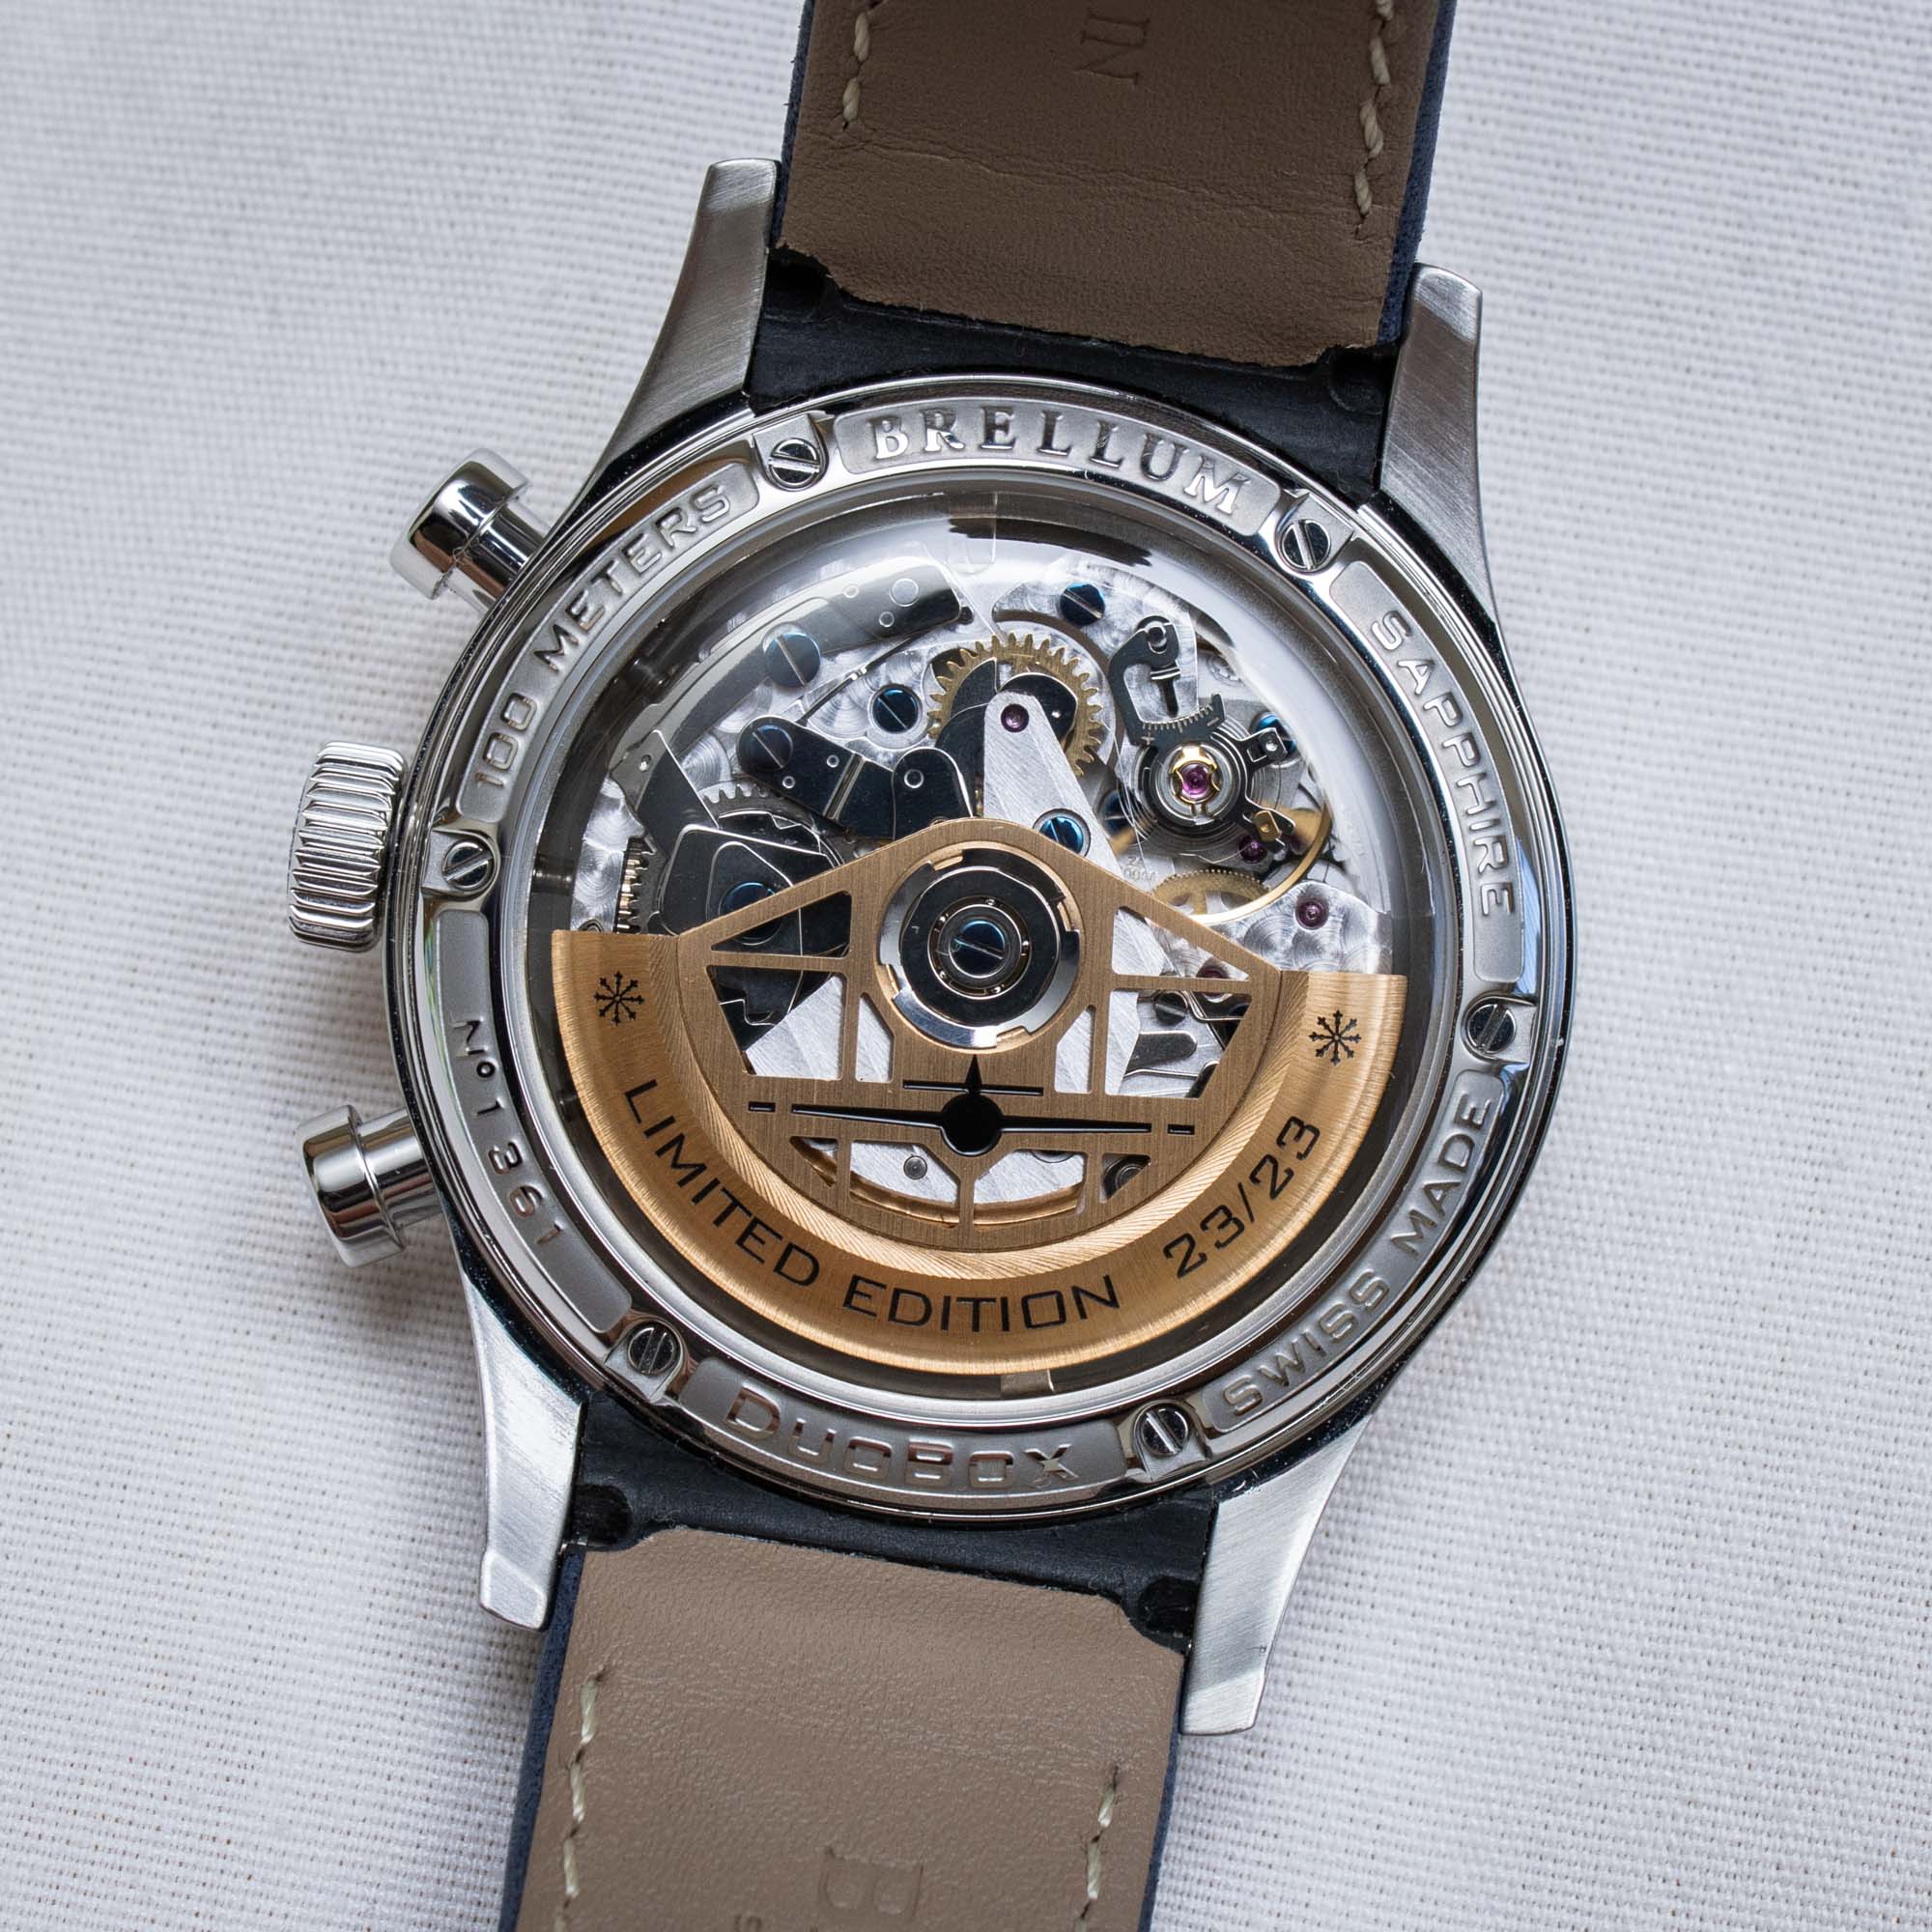 Часы Brellum Pilot LE.2 GMT Chronometer